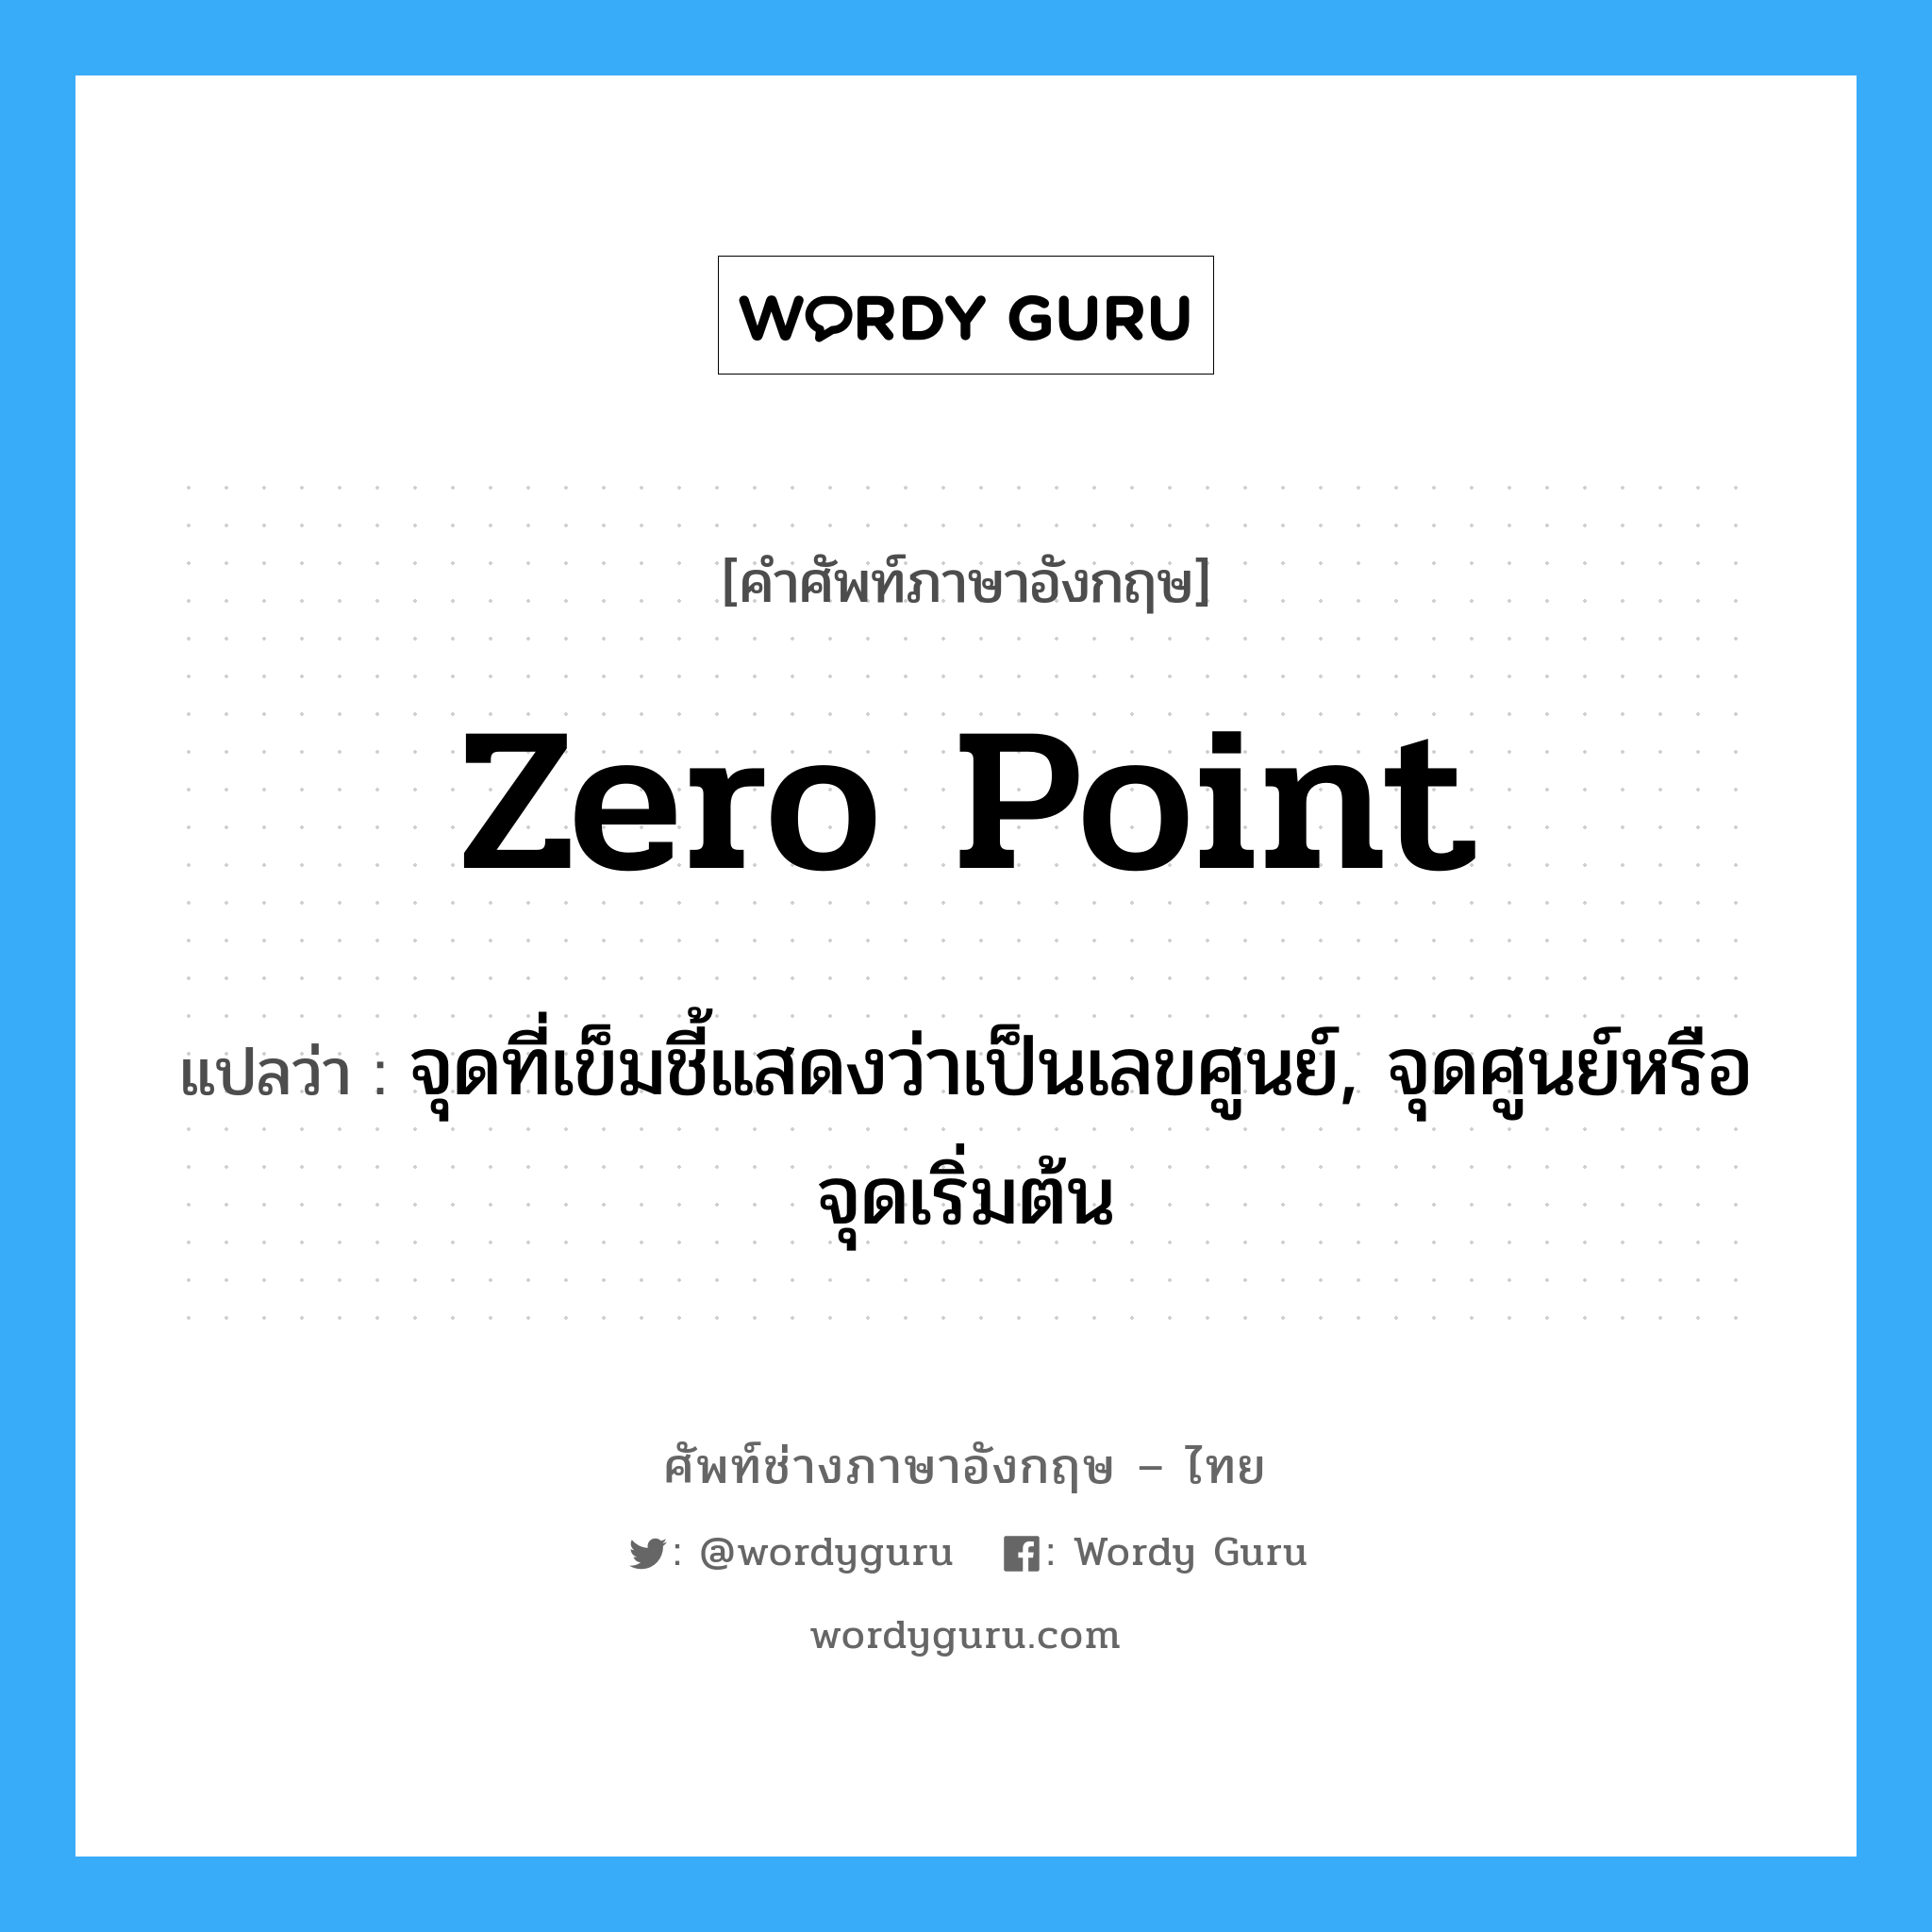 zero point แปลว่า?, คำศัพท์ช่างภาษาอังกฤษ - ไทย zero point คำศัพท์ภาษาอังกฤษ zero point แปลว่า จุดที่เข็มชี้แสดงว่าเป็นเลขศูนย์, จุดศูนย์หรือจุดเริ่มต้น